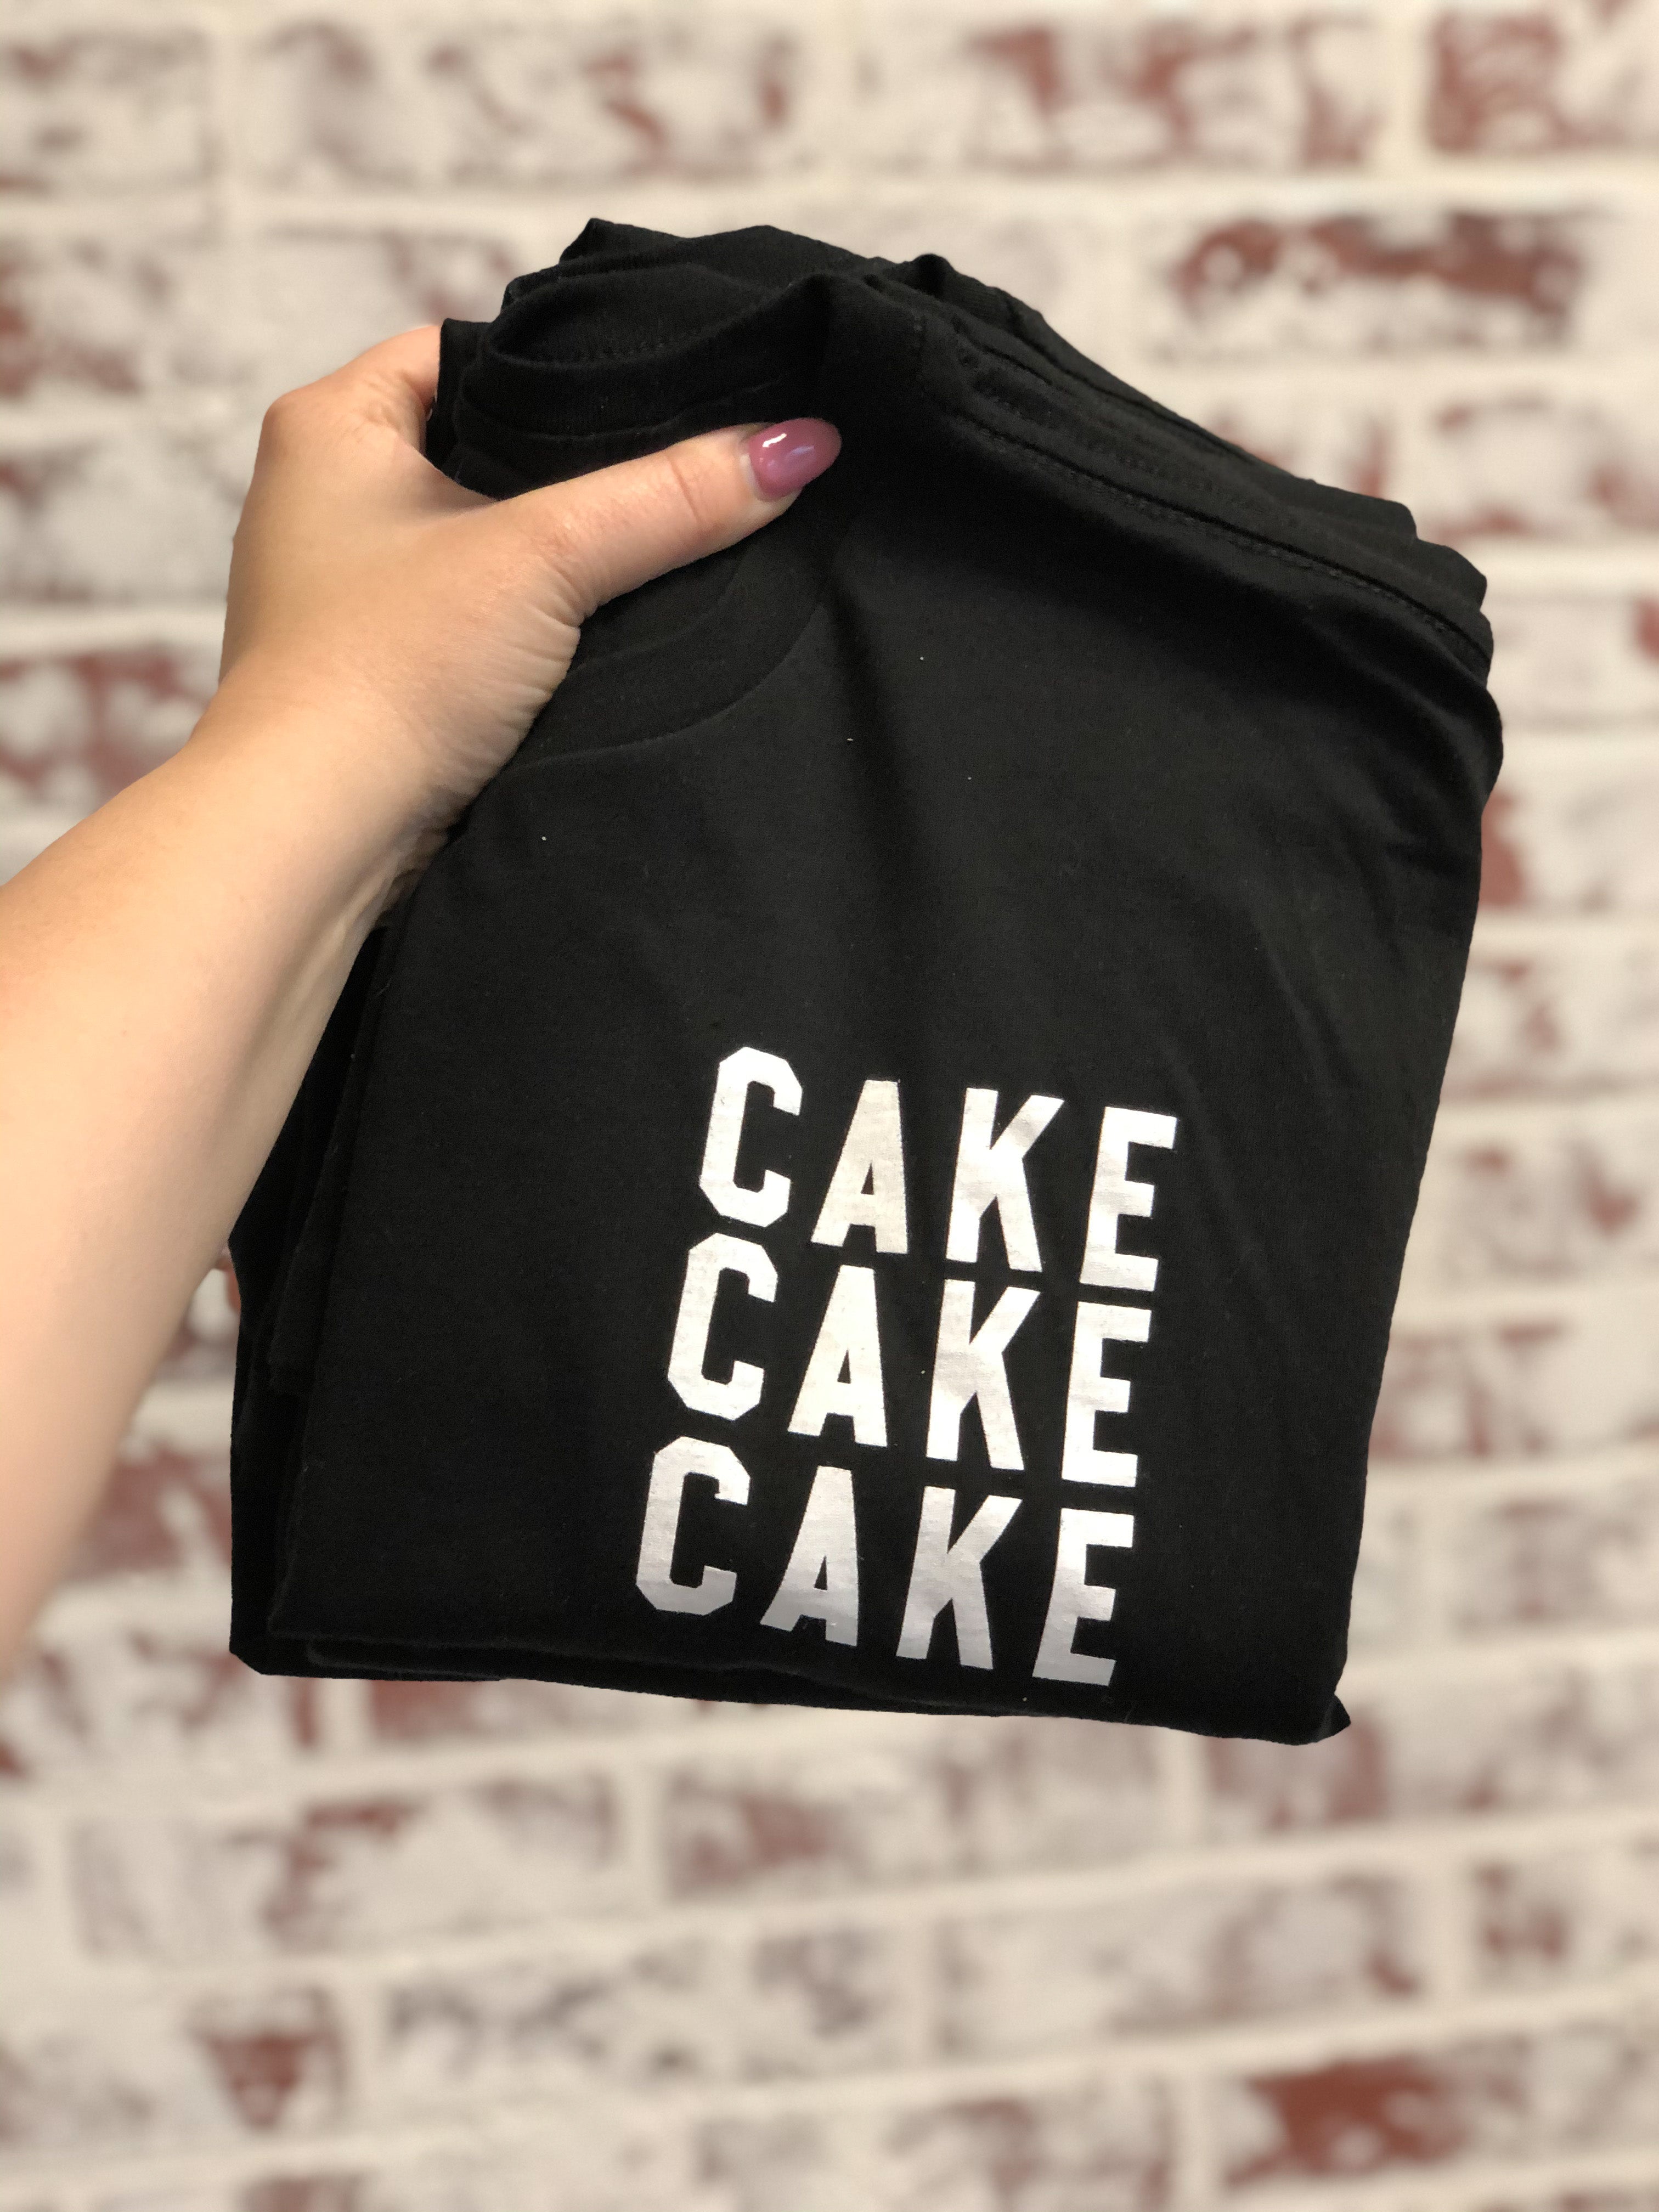 CAKE CAKE CAKE Long Sleeve